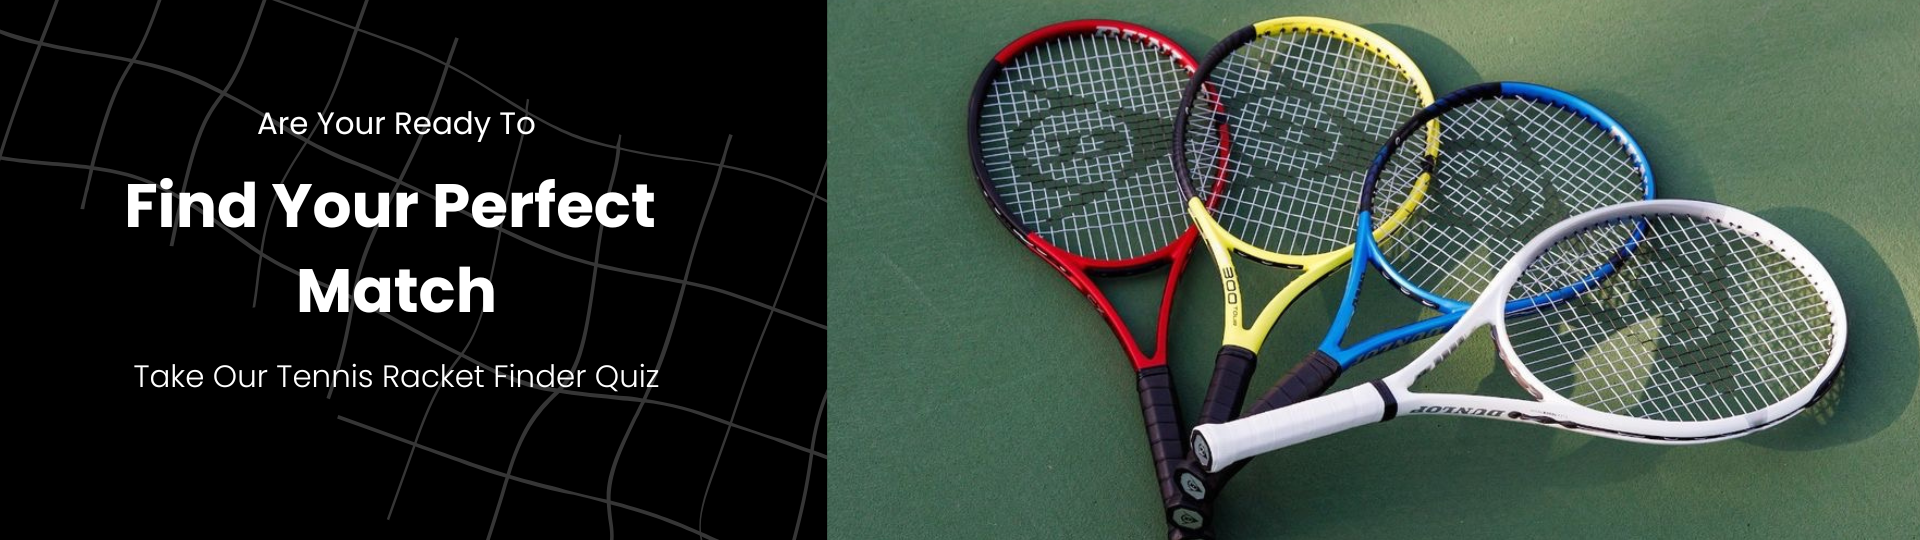 Find Your Perfect Match - Dunlop Tennis Racket Finder - Quiz